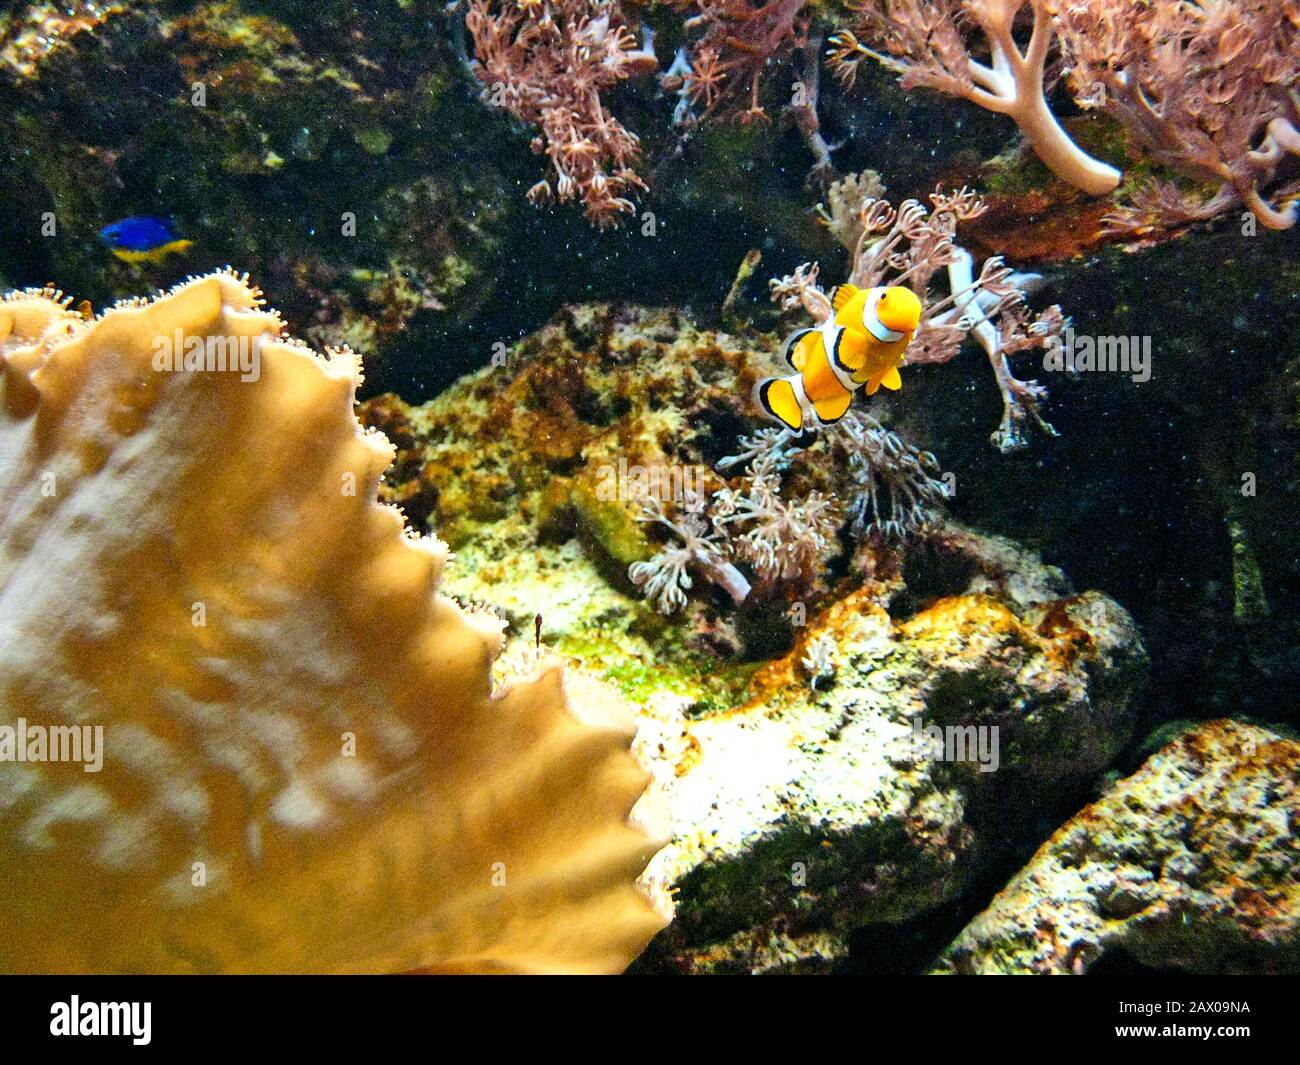 Black-orange clown fish in aquarium Stock Photo